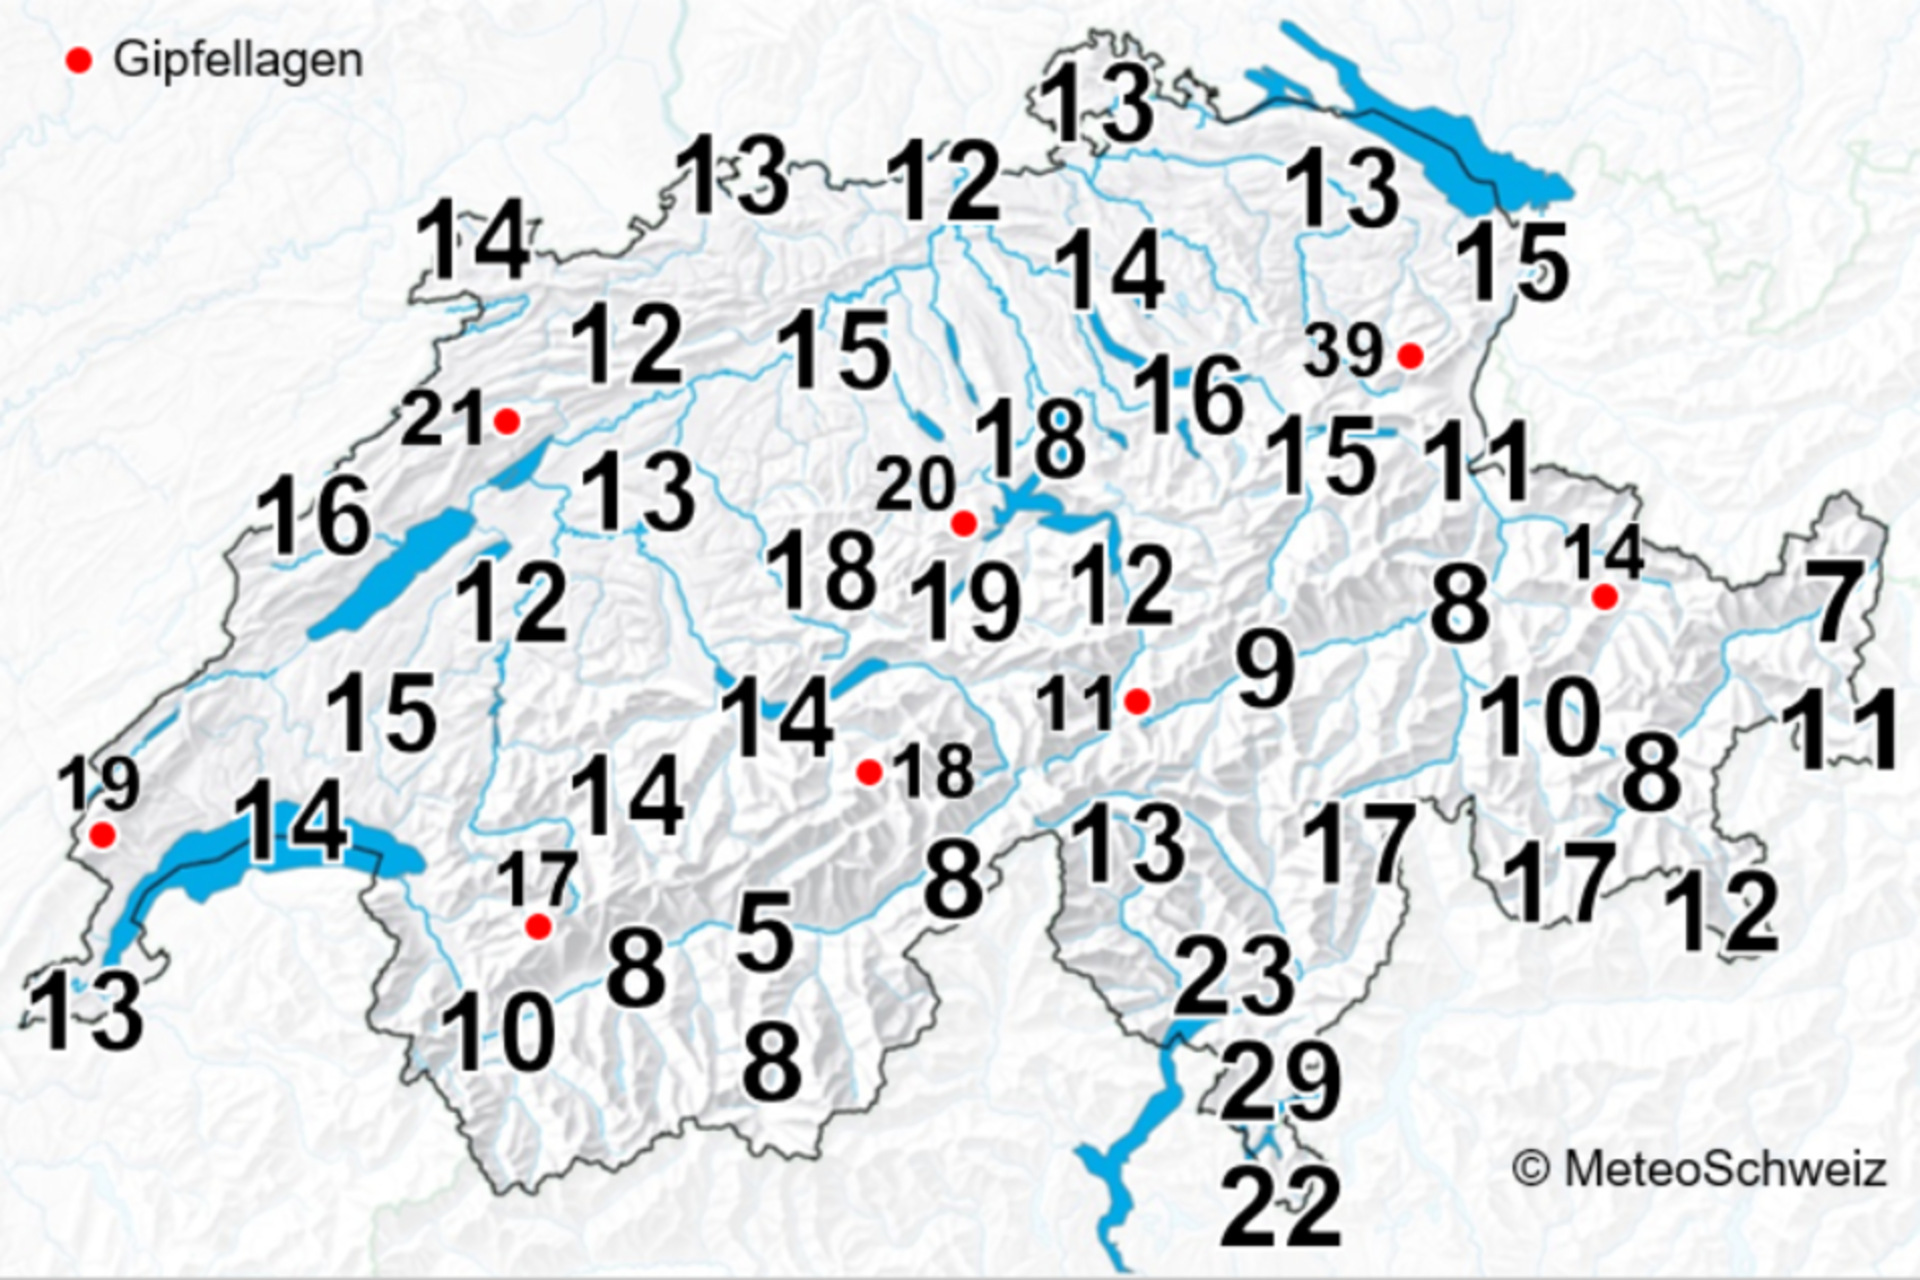 Կայծակ. Շվեյցարիայում տարեկան ամպրոպով օրերի միջին թիվը, որը նշանակում է օրական առնվազն մեկ ամպրոպ, 2000-2020թթ.